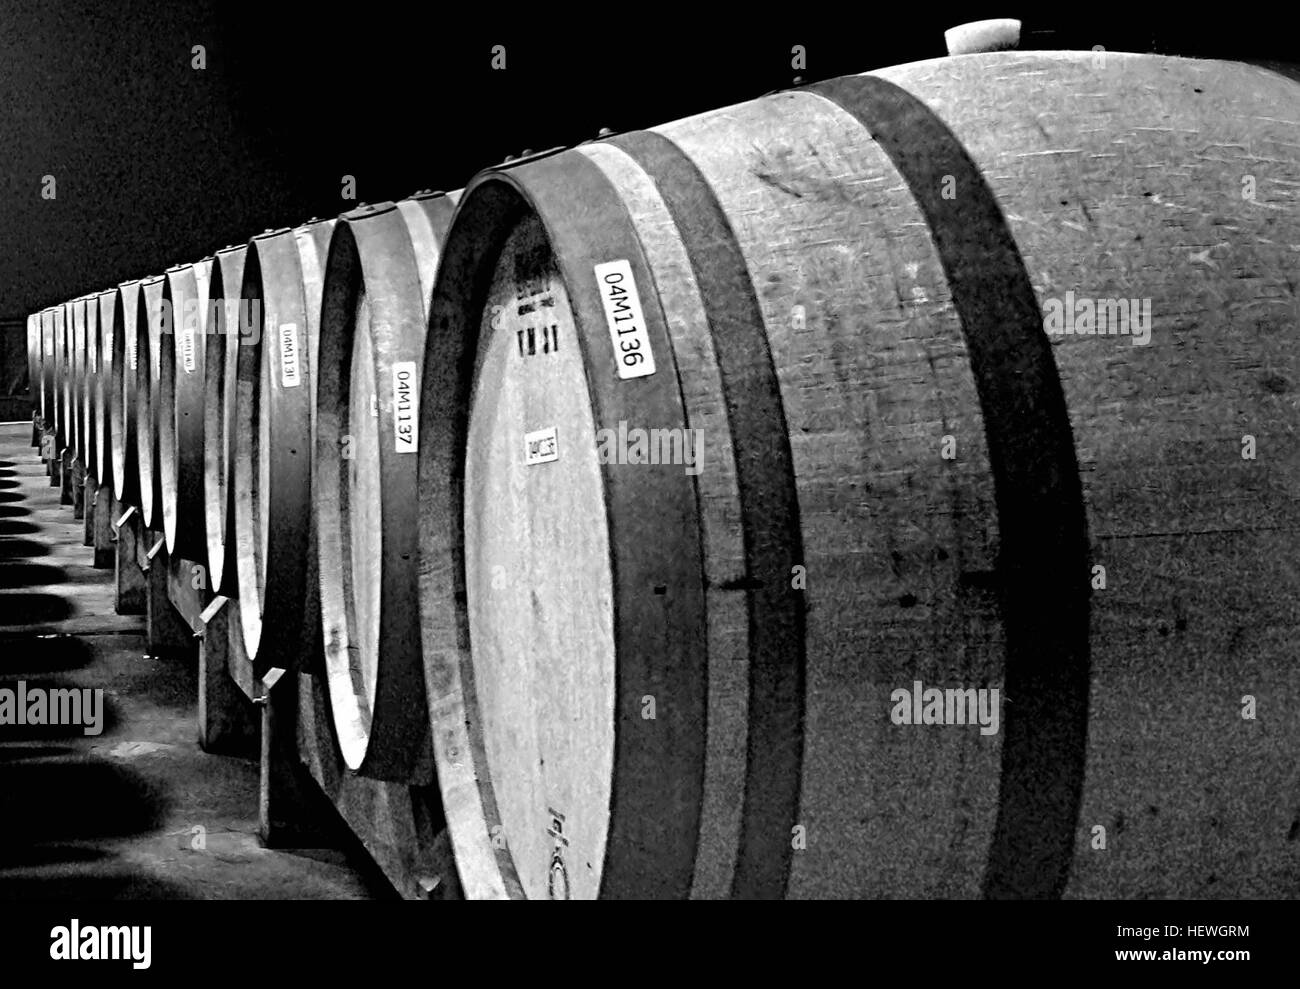 Die Verwendung von Eichenholz kann spielt eine bedeutende Rolle in der Weinbereitung und einen profunden Effekt auf der Wein, Farbe, Geschmack, Tannin Profil und Textur des Weines beeinflussen. Eiche kann in Form eines Fasses Wein während der Gärung oder Alterung Perioden Berührung. Es kann dem Wein in Form von frei flottierenden Eichenholz-Chips oder als Holz Stäbe (oder Stangen) hinzugefügt, um Wein in einem Gärtank wie Edelstahl eingeführt werden. Die Verwendung von Barriques kann andere Qualitäten zu Wein durch die Prozesse von Verdampfung und geringe Belastung durch Sauerstoff vermitteln. Stockfoto